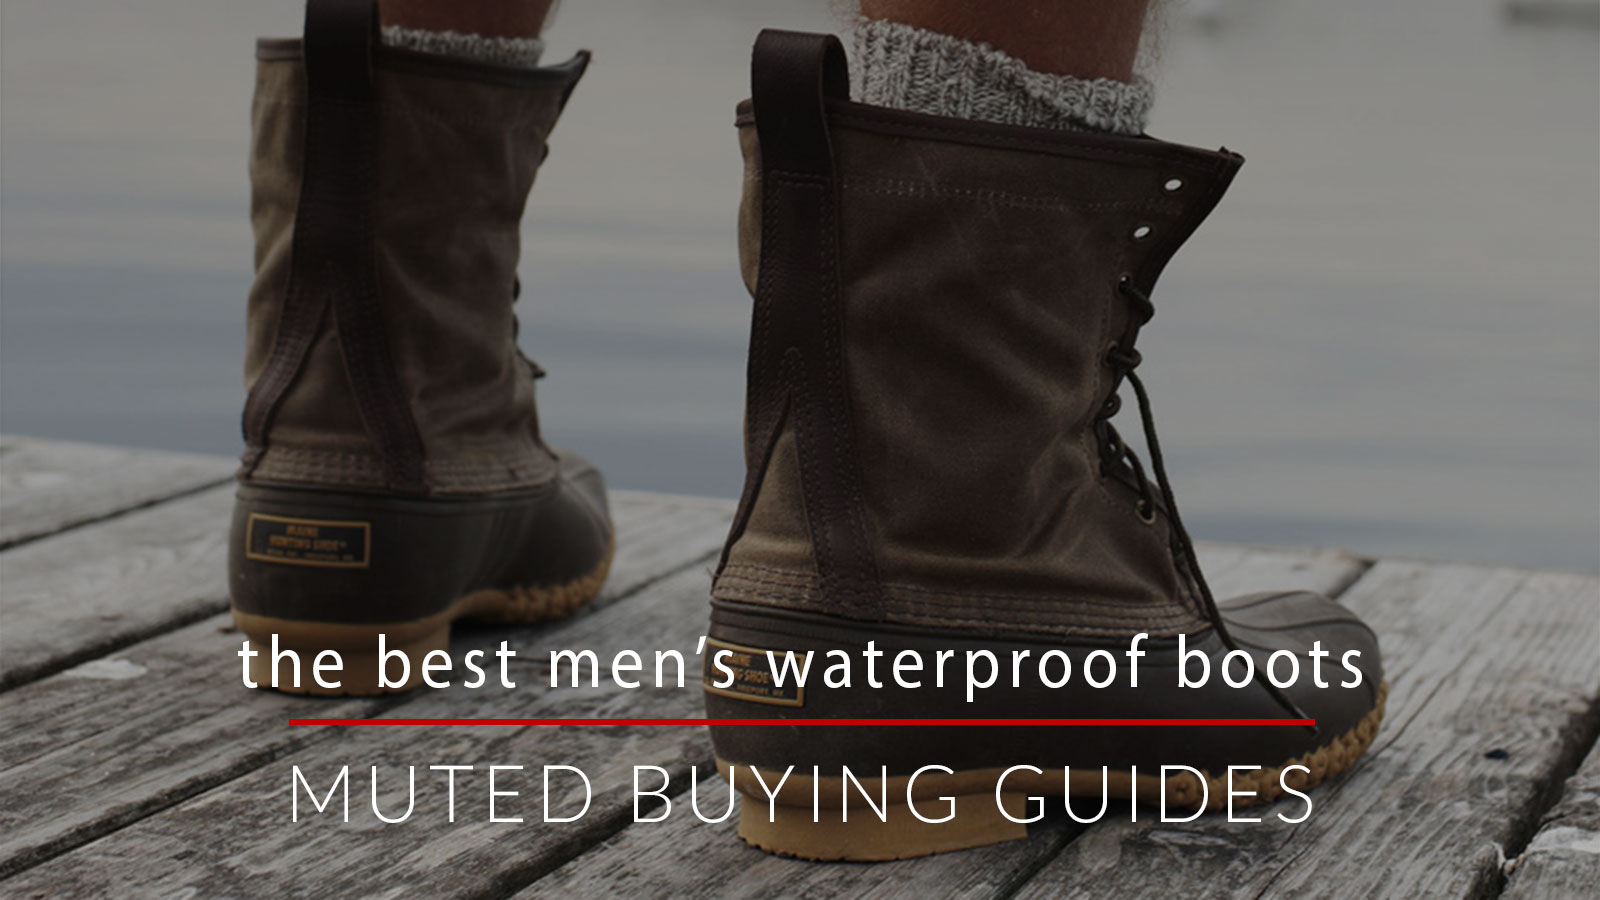 The Best Men's Waterproof Boots